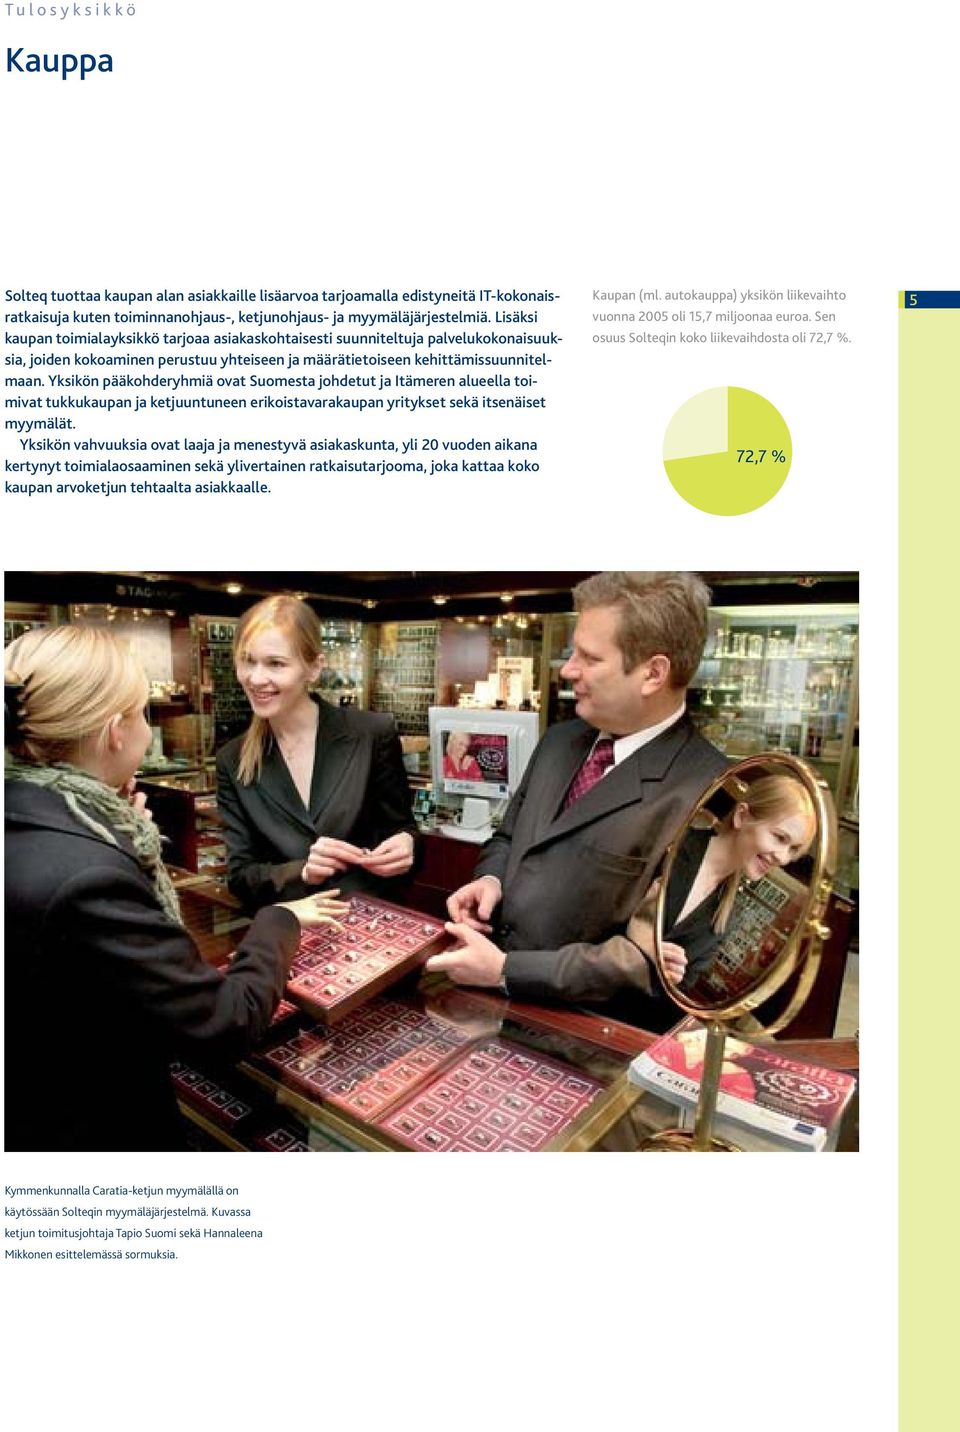 Yksikön pääkohderyhmiä ovat Suomesta johdetut ja Itämeren alueella toimivat tukkukaupan ja ketjuuntuneen erikoistavarakaupan yritykset sekä itsenäiset myymälät.